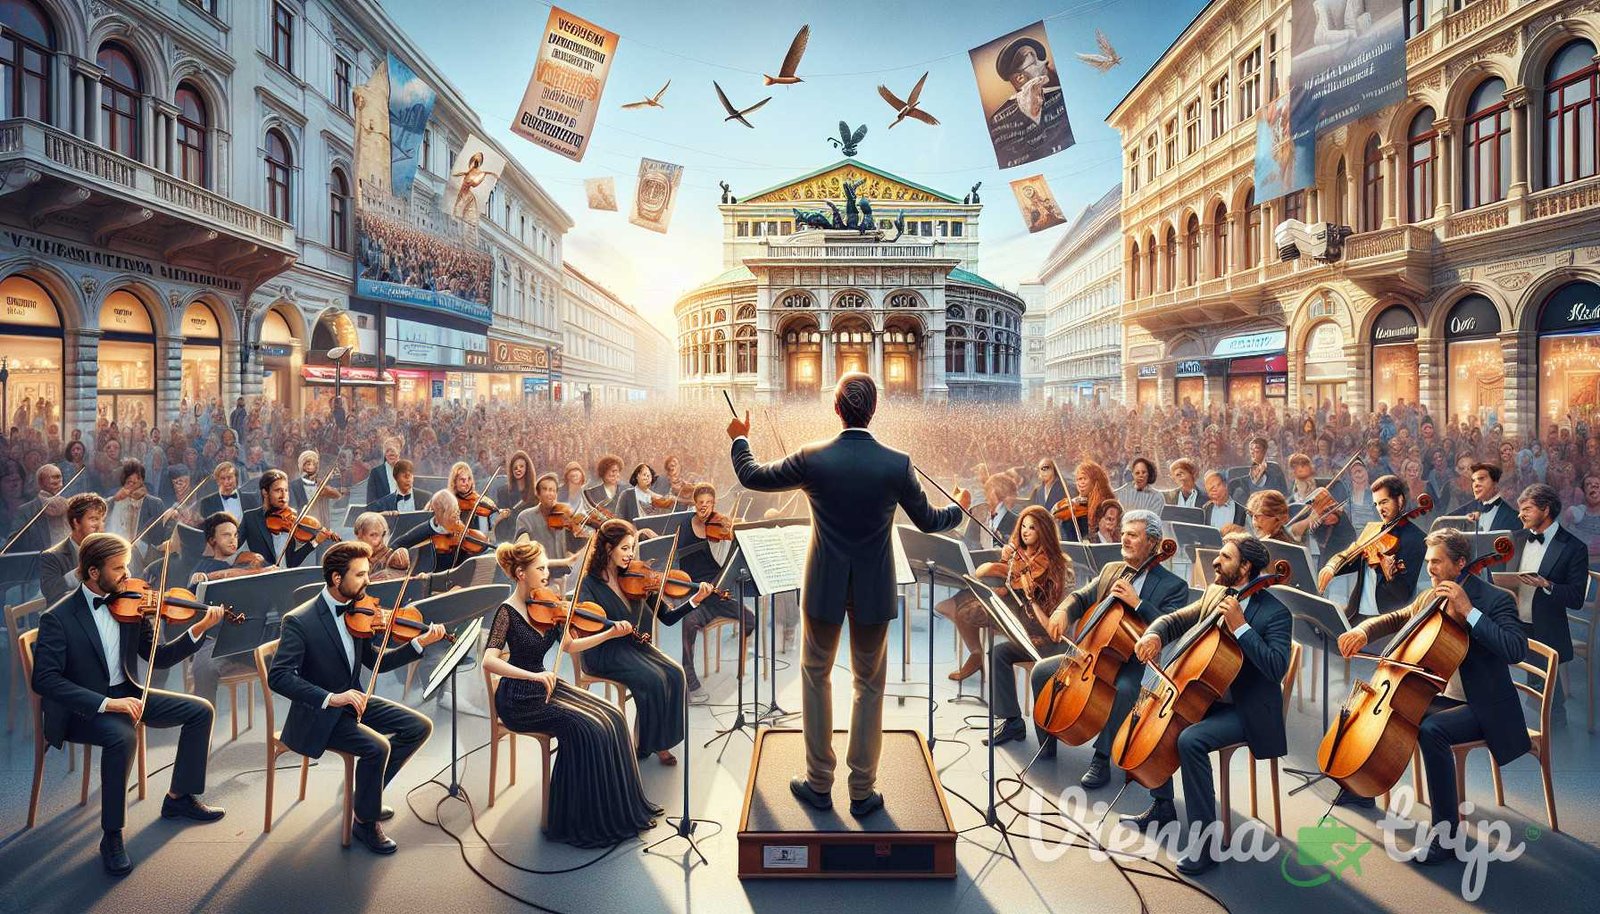 Ilustración para la sección: Las encantadoras melodías de Viena se extienden más allá de los teatros de ópera y salas de conciertos. Las vibrantes melodías mu - vienas de la ciudad